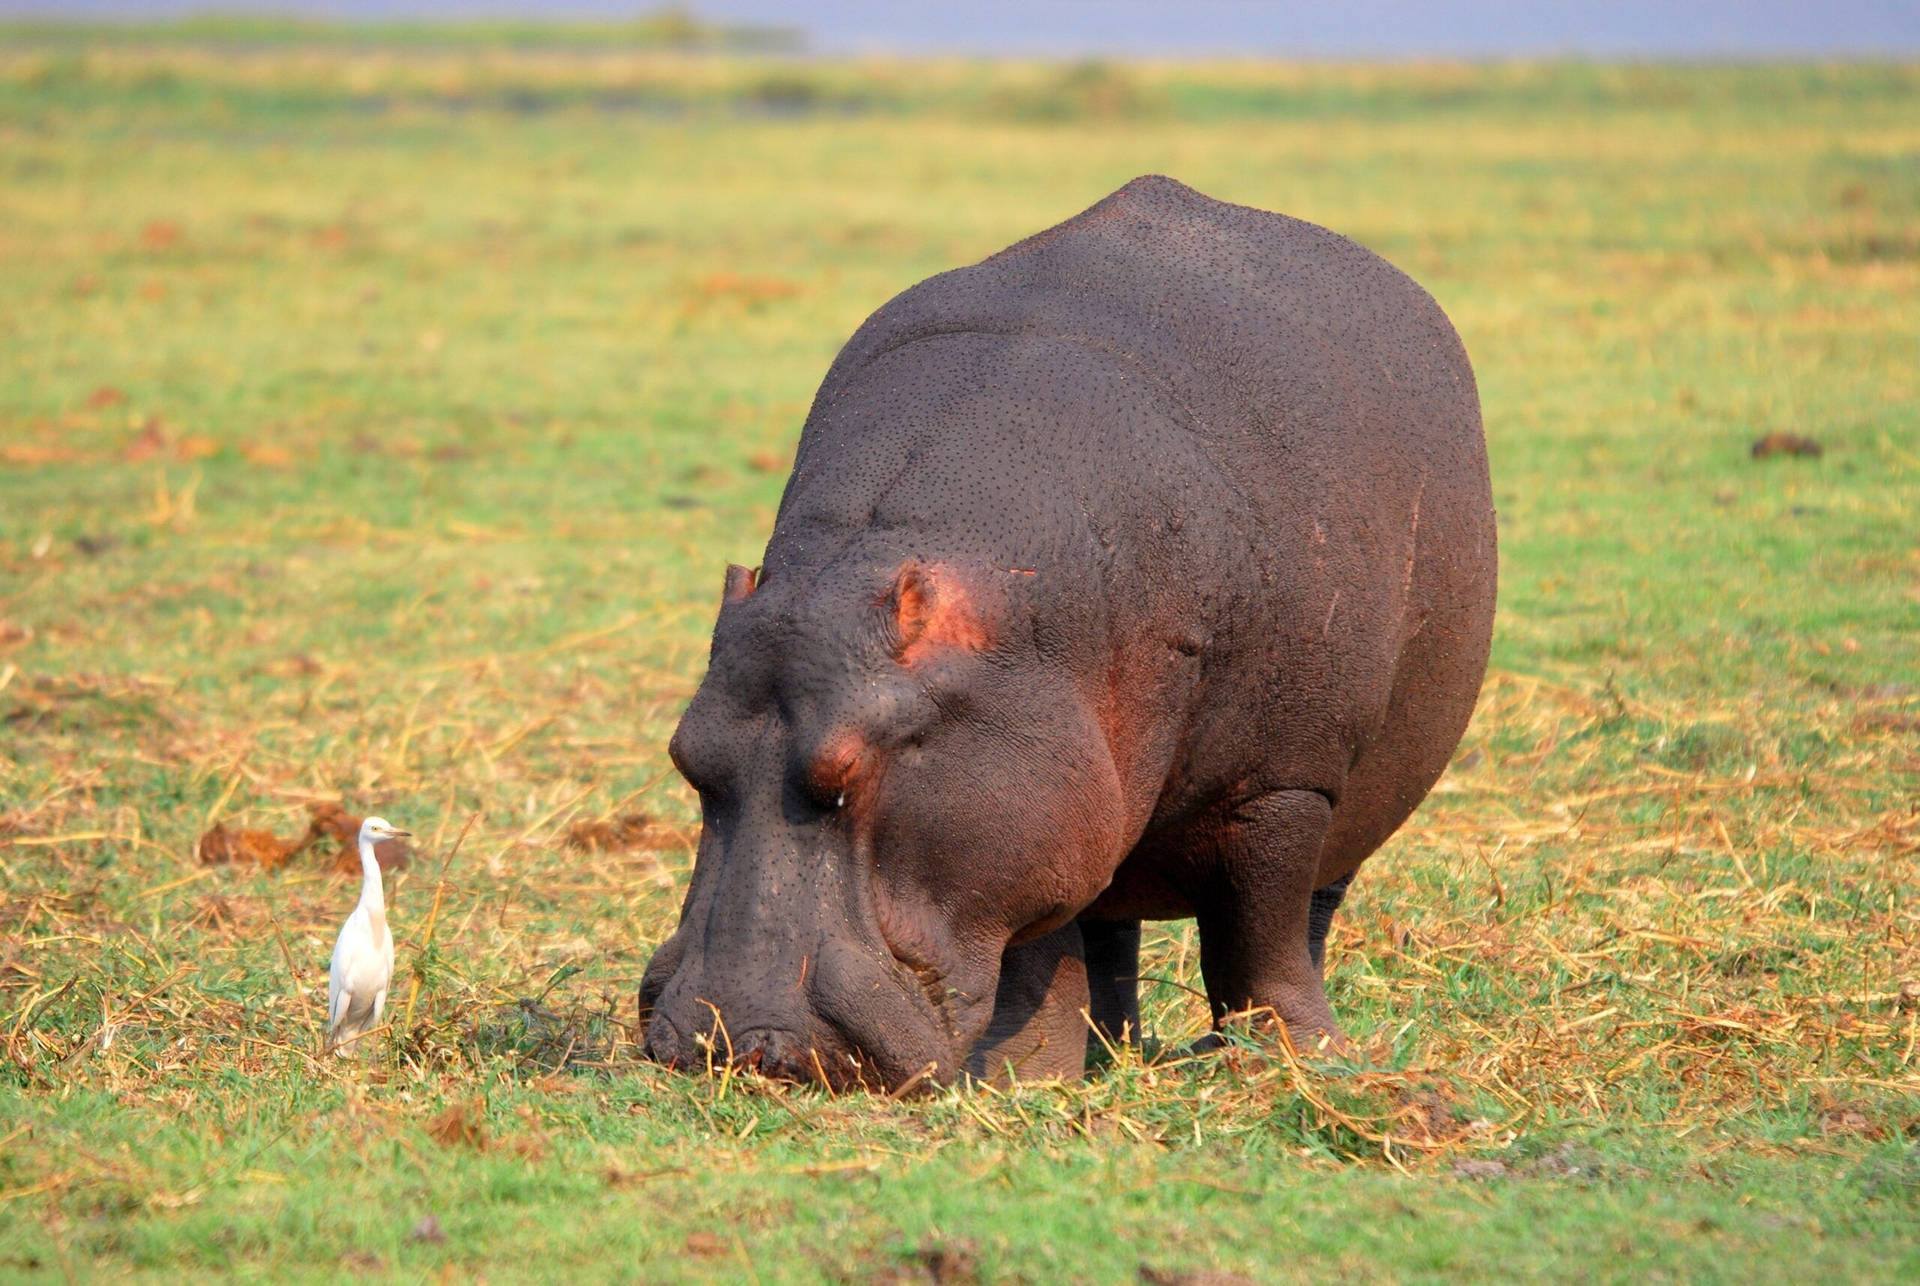 Hippopotamus Grazing On Grass Field